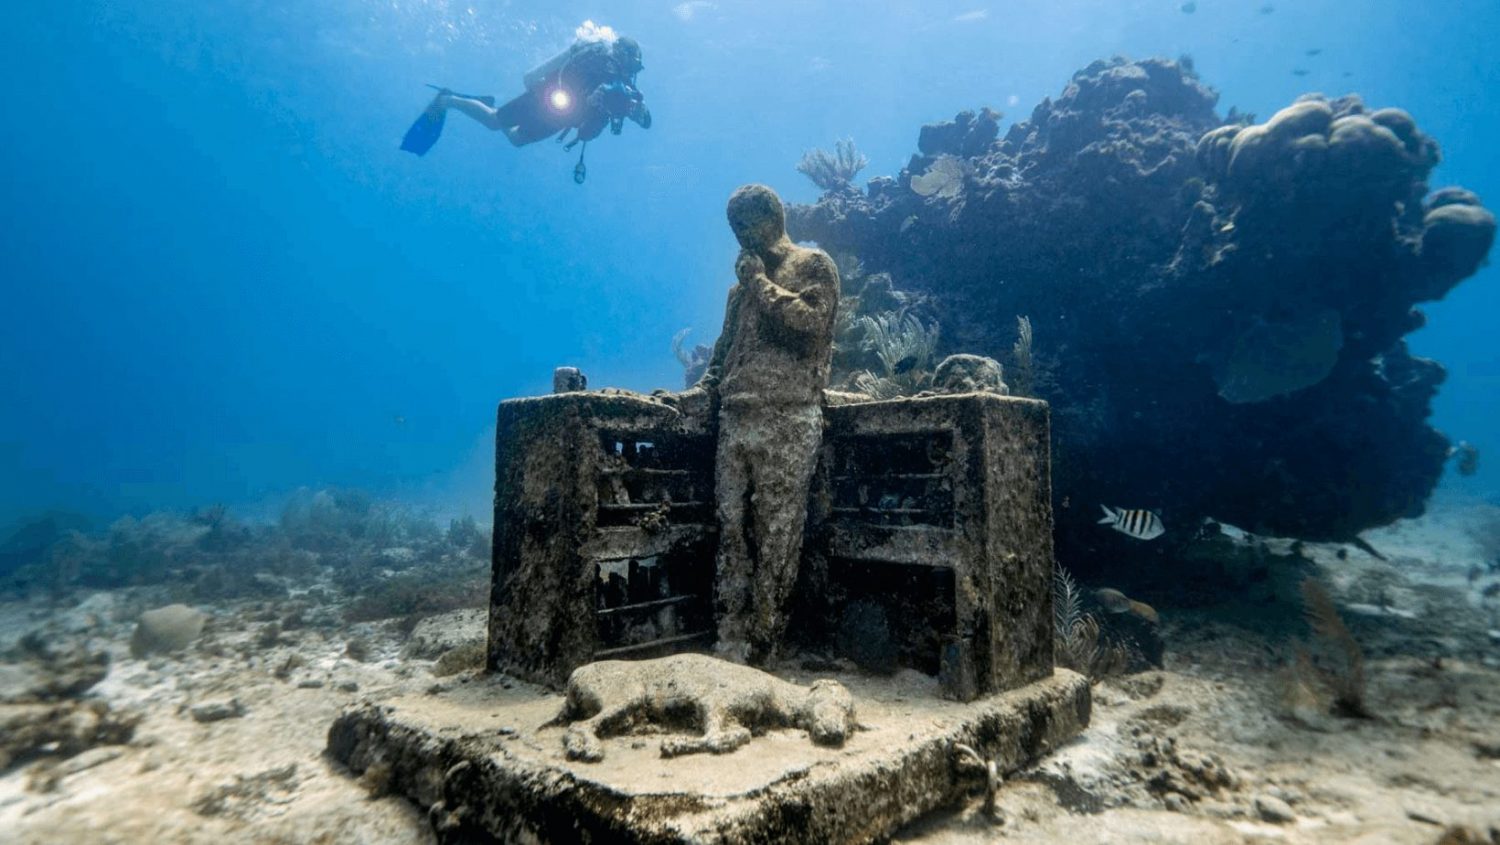 An Underwater Exhibition